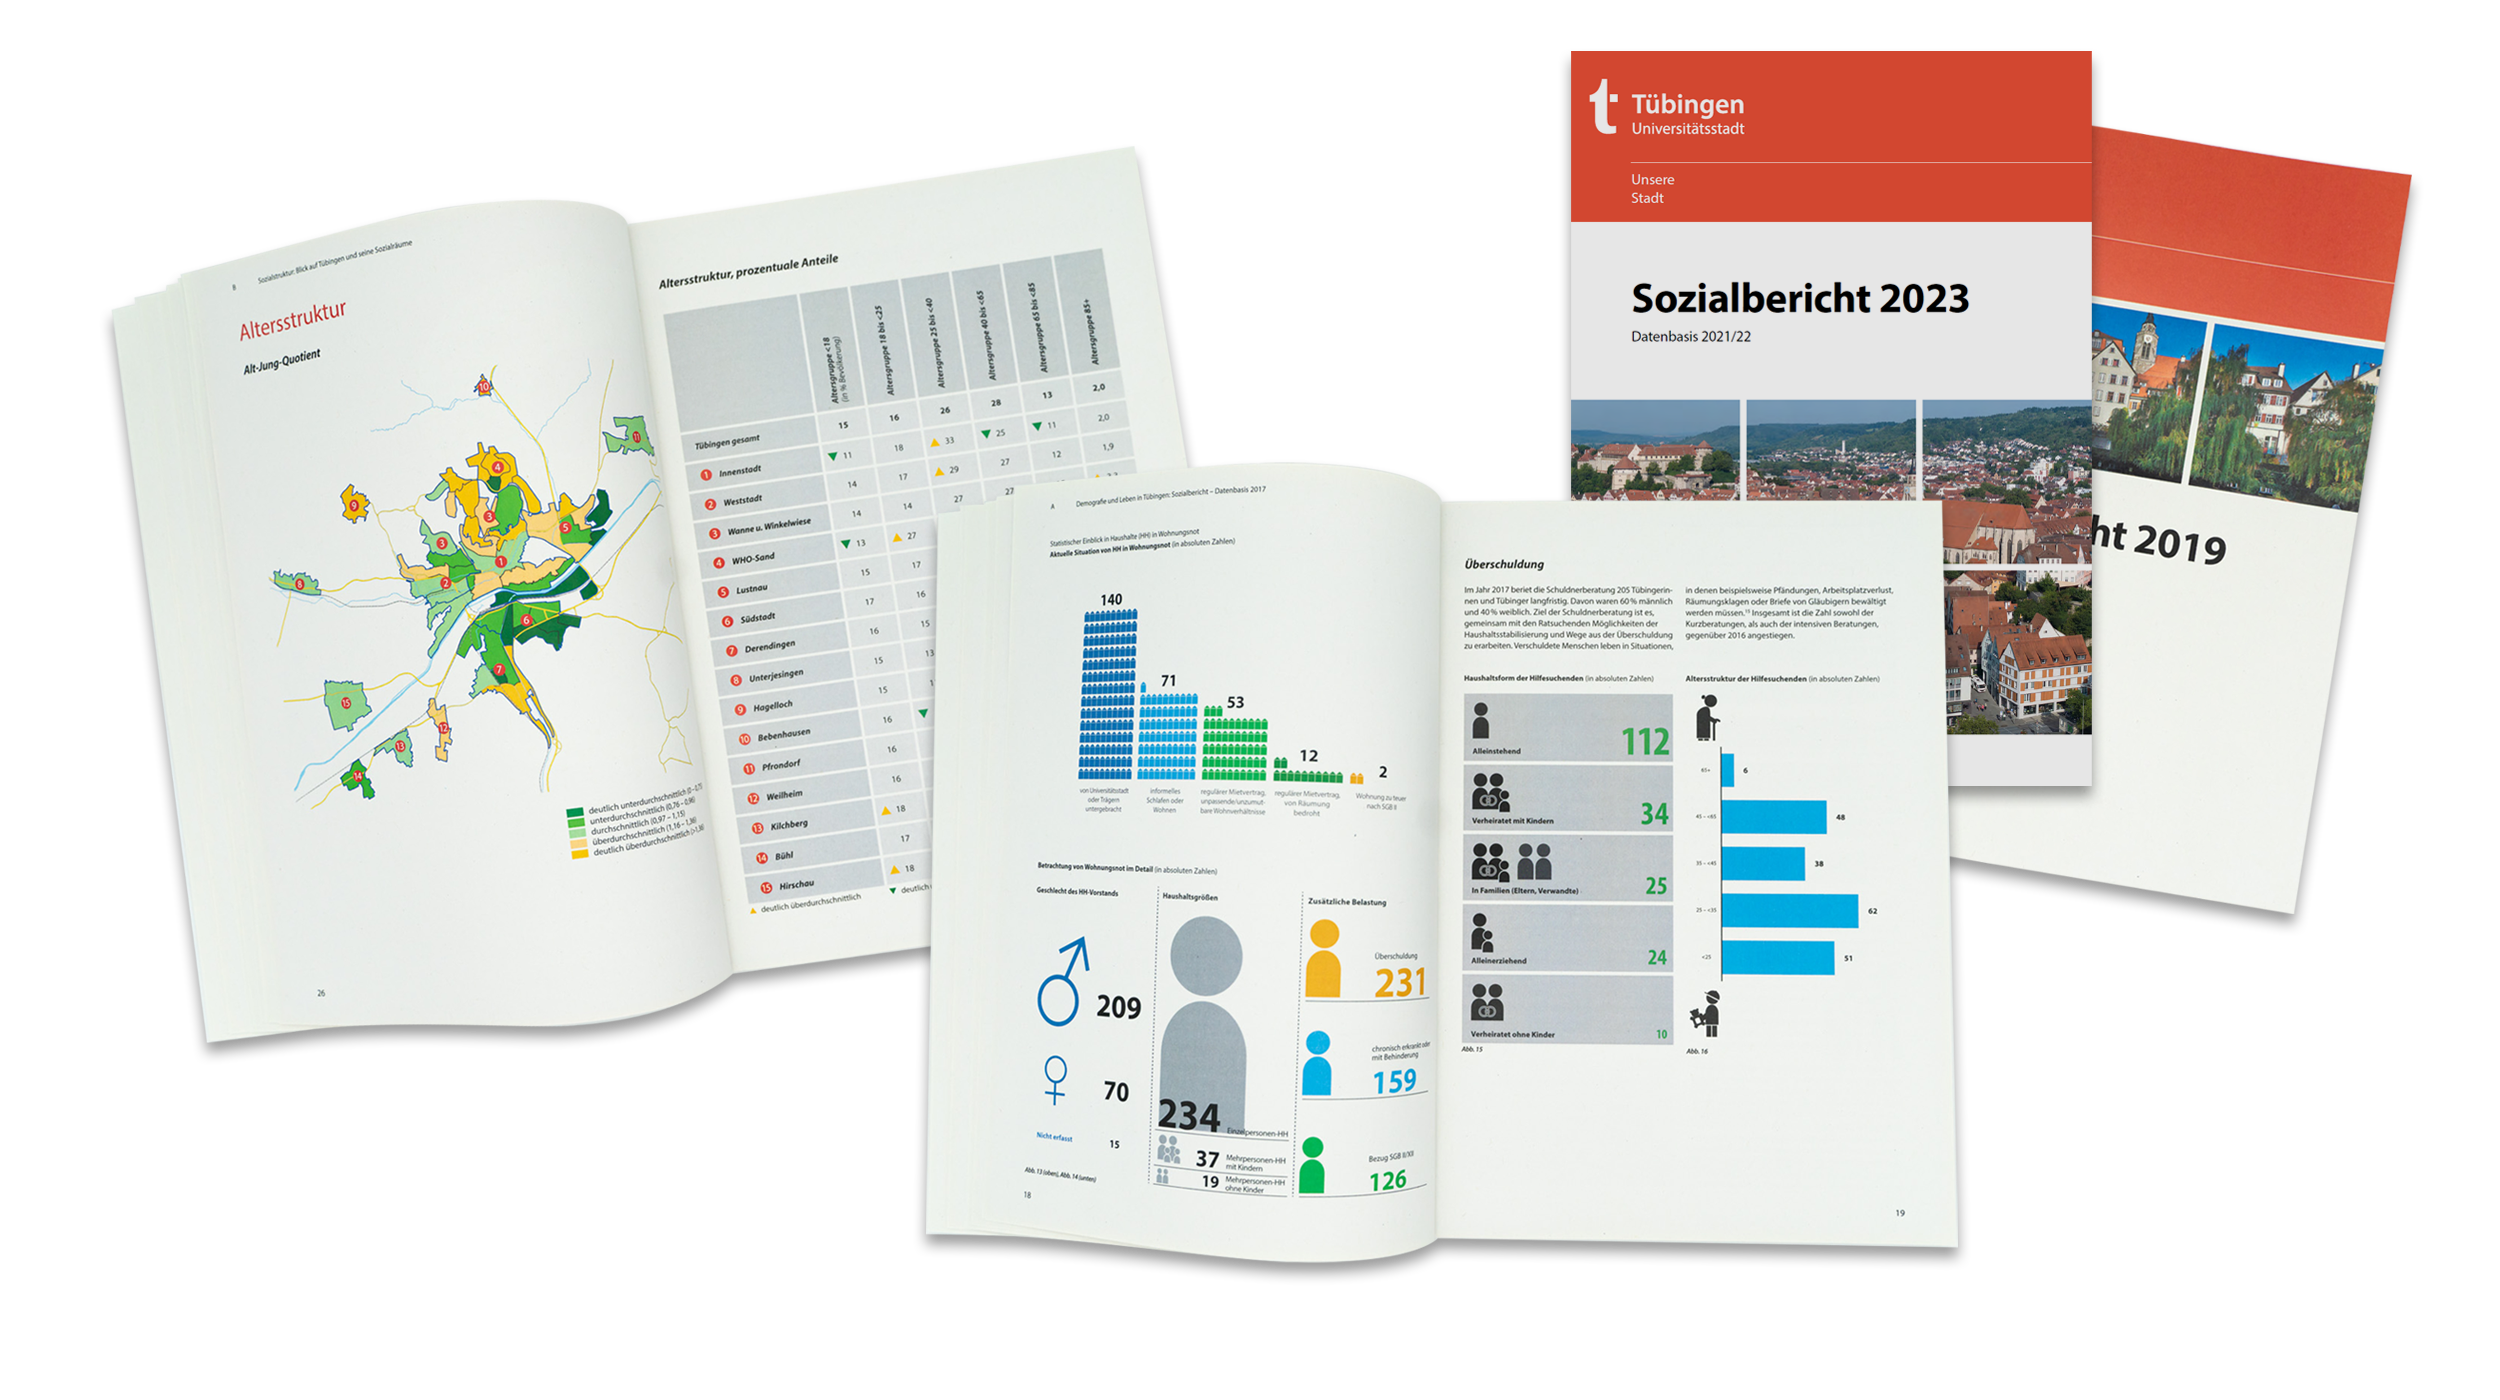 Das Bild zeigt den Sozialbericht 2023 und 2019 und zwei aufgeschlagene Beispielseiten.